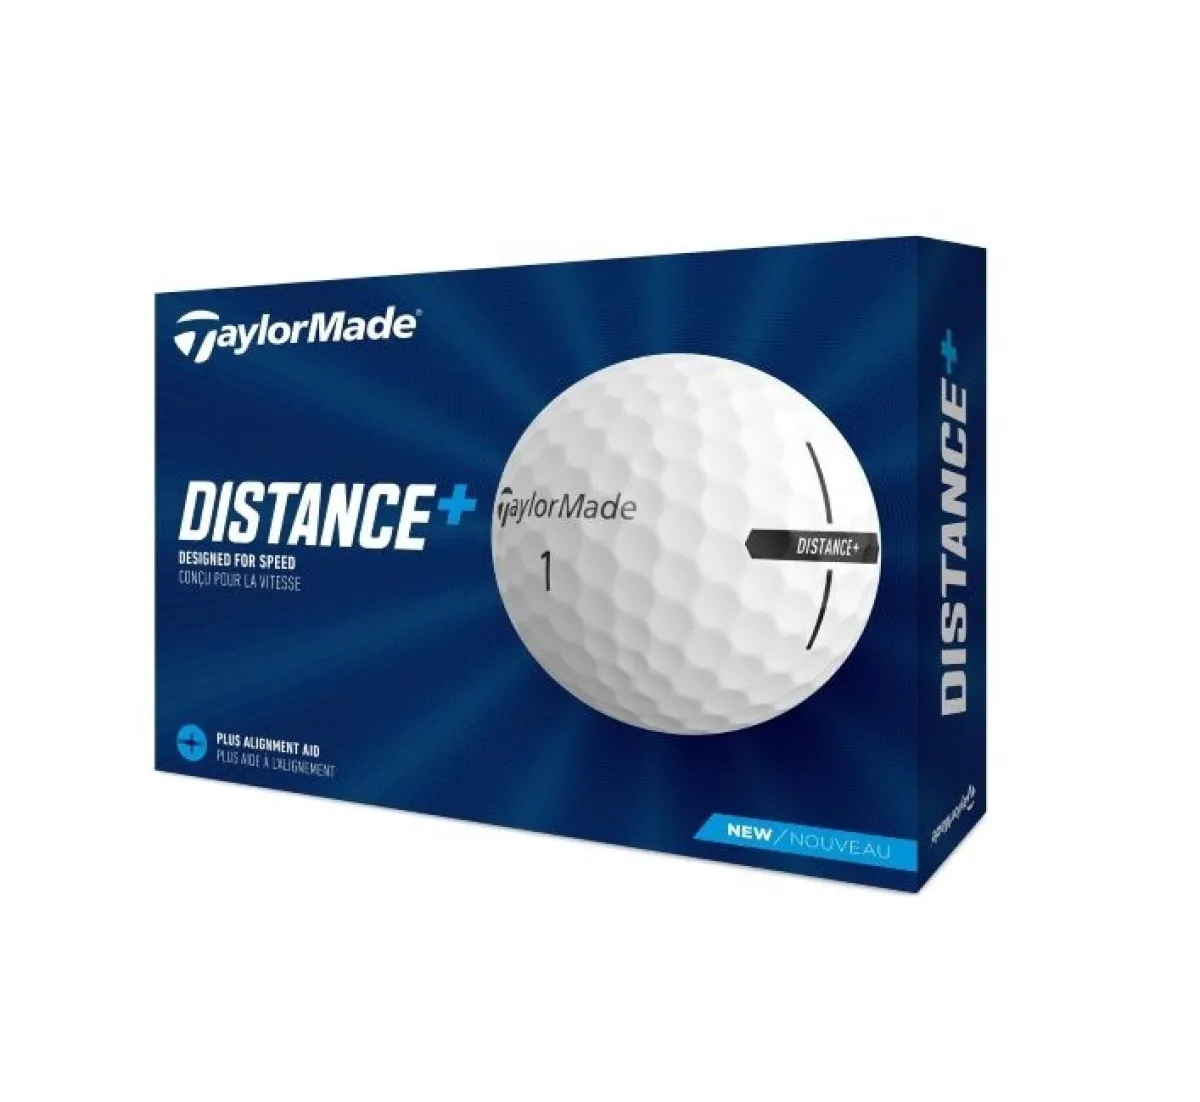 Balles de golf TaylorMade Distance + - DV600